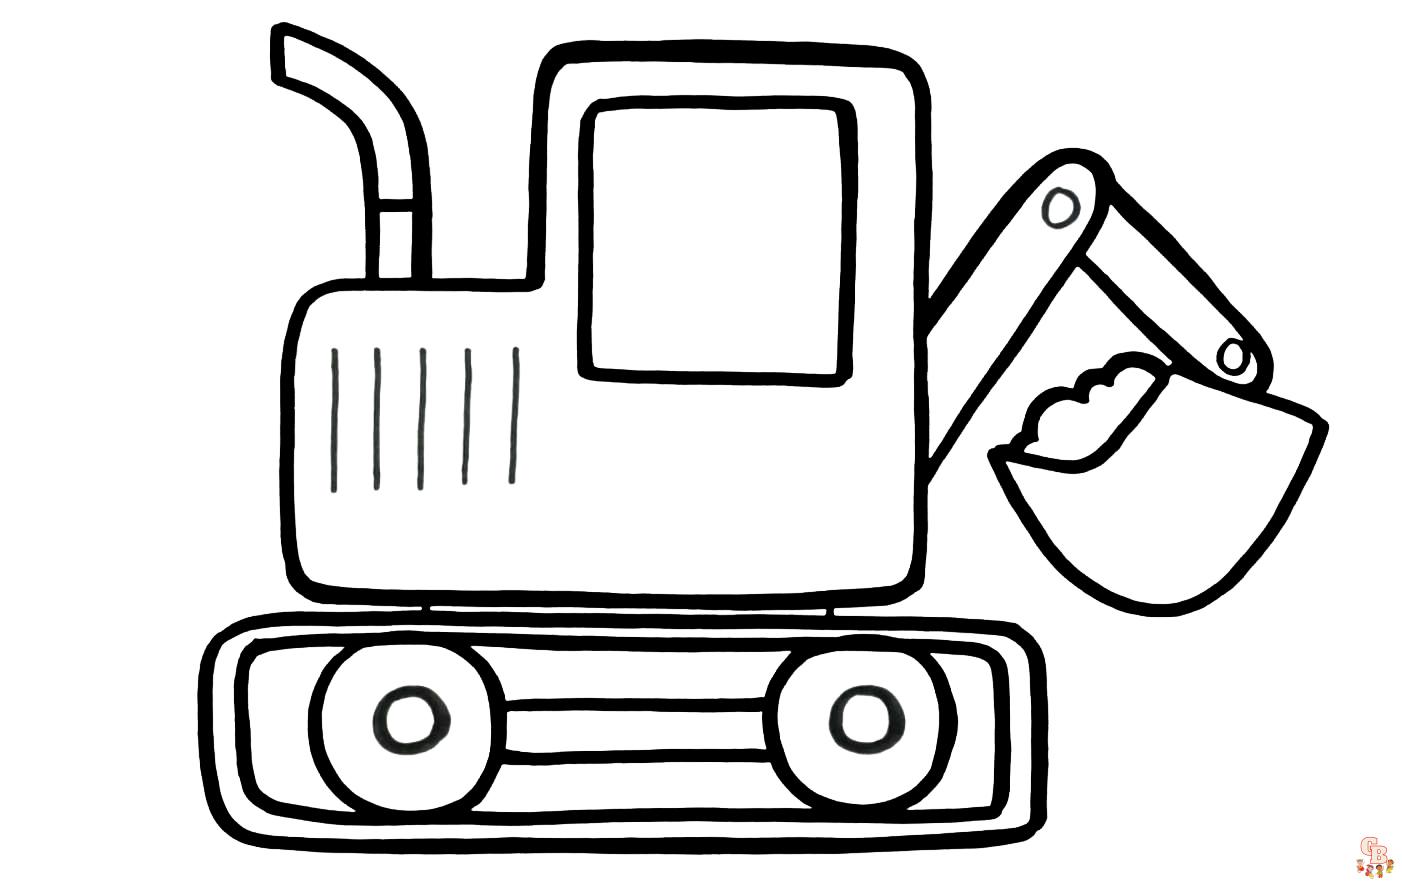 Раскраска из Мультфильма - Робокар Поли: такси, пожарная машина, экскаватор - video Dailymotion